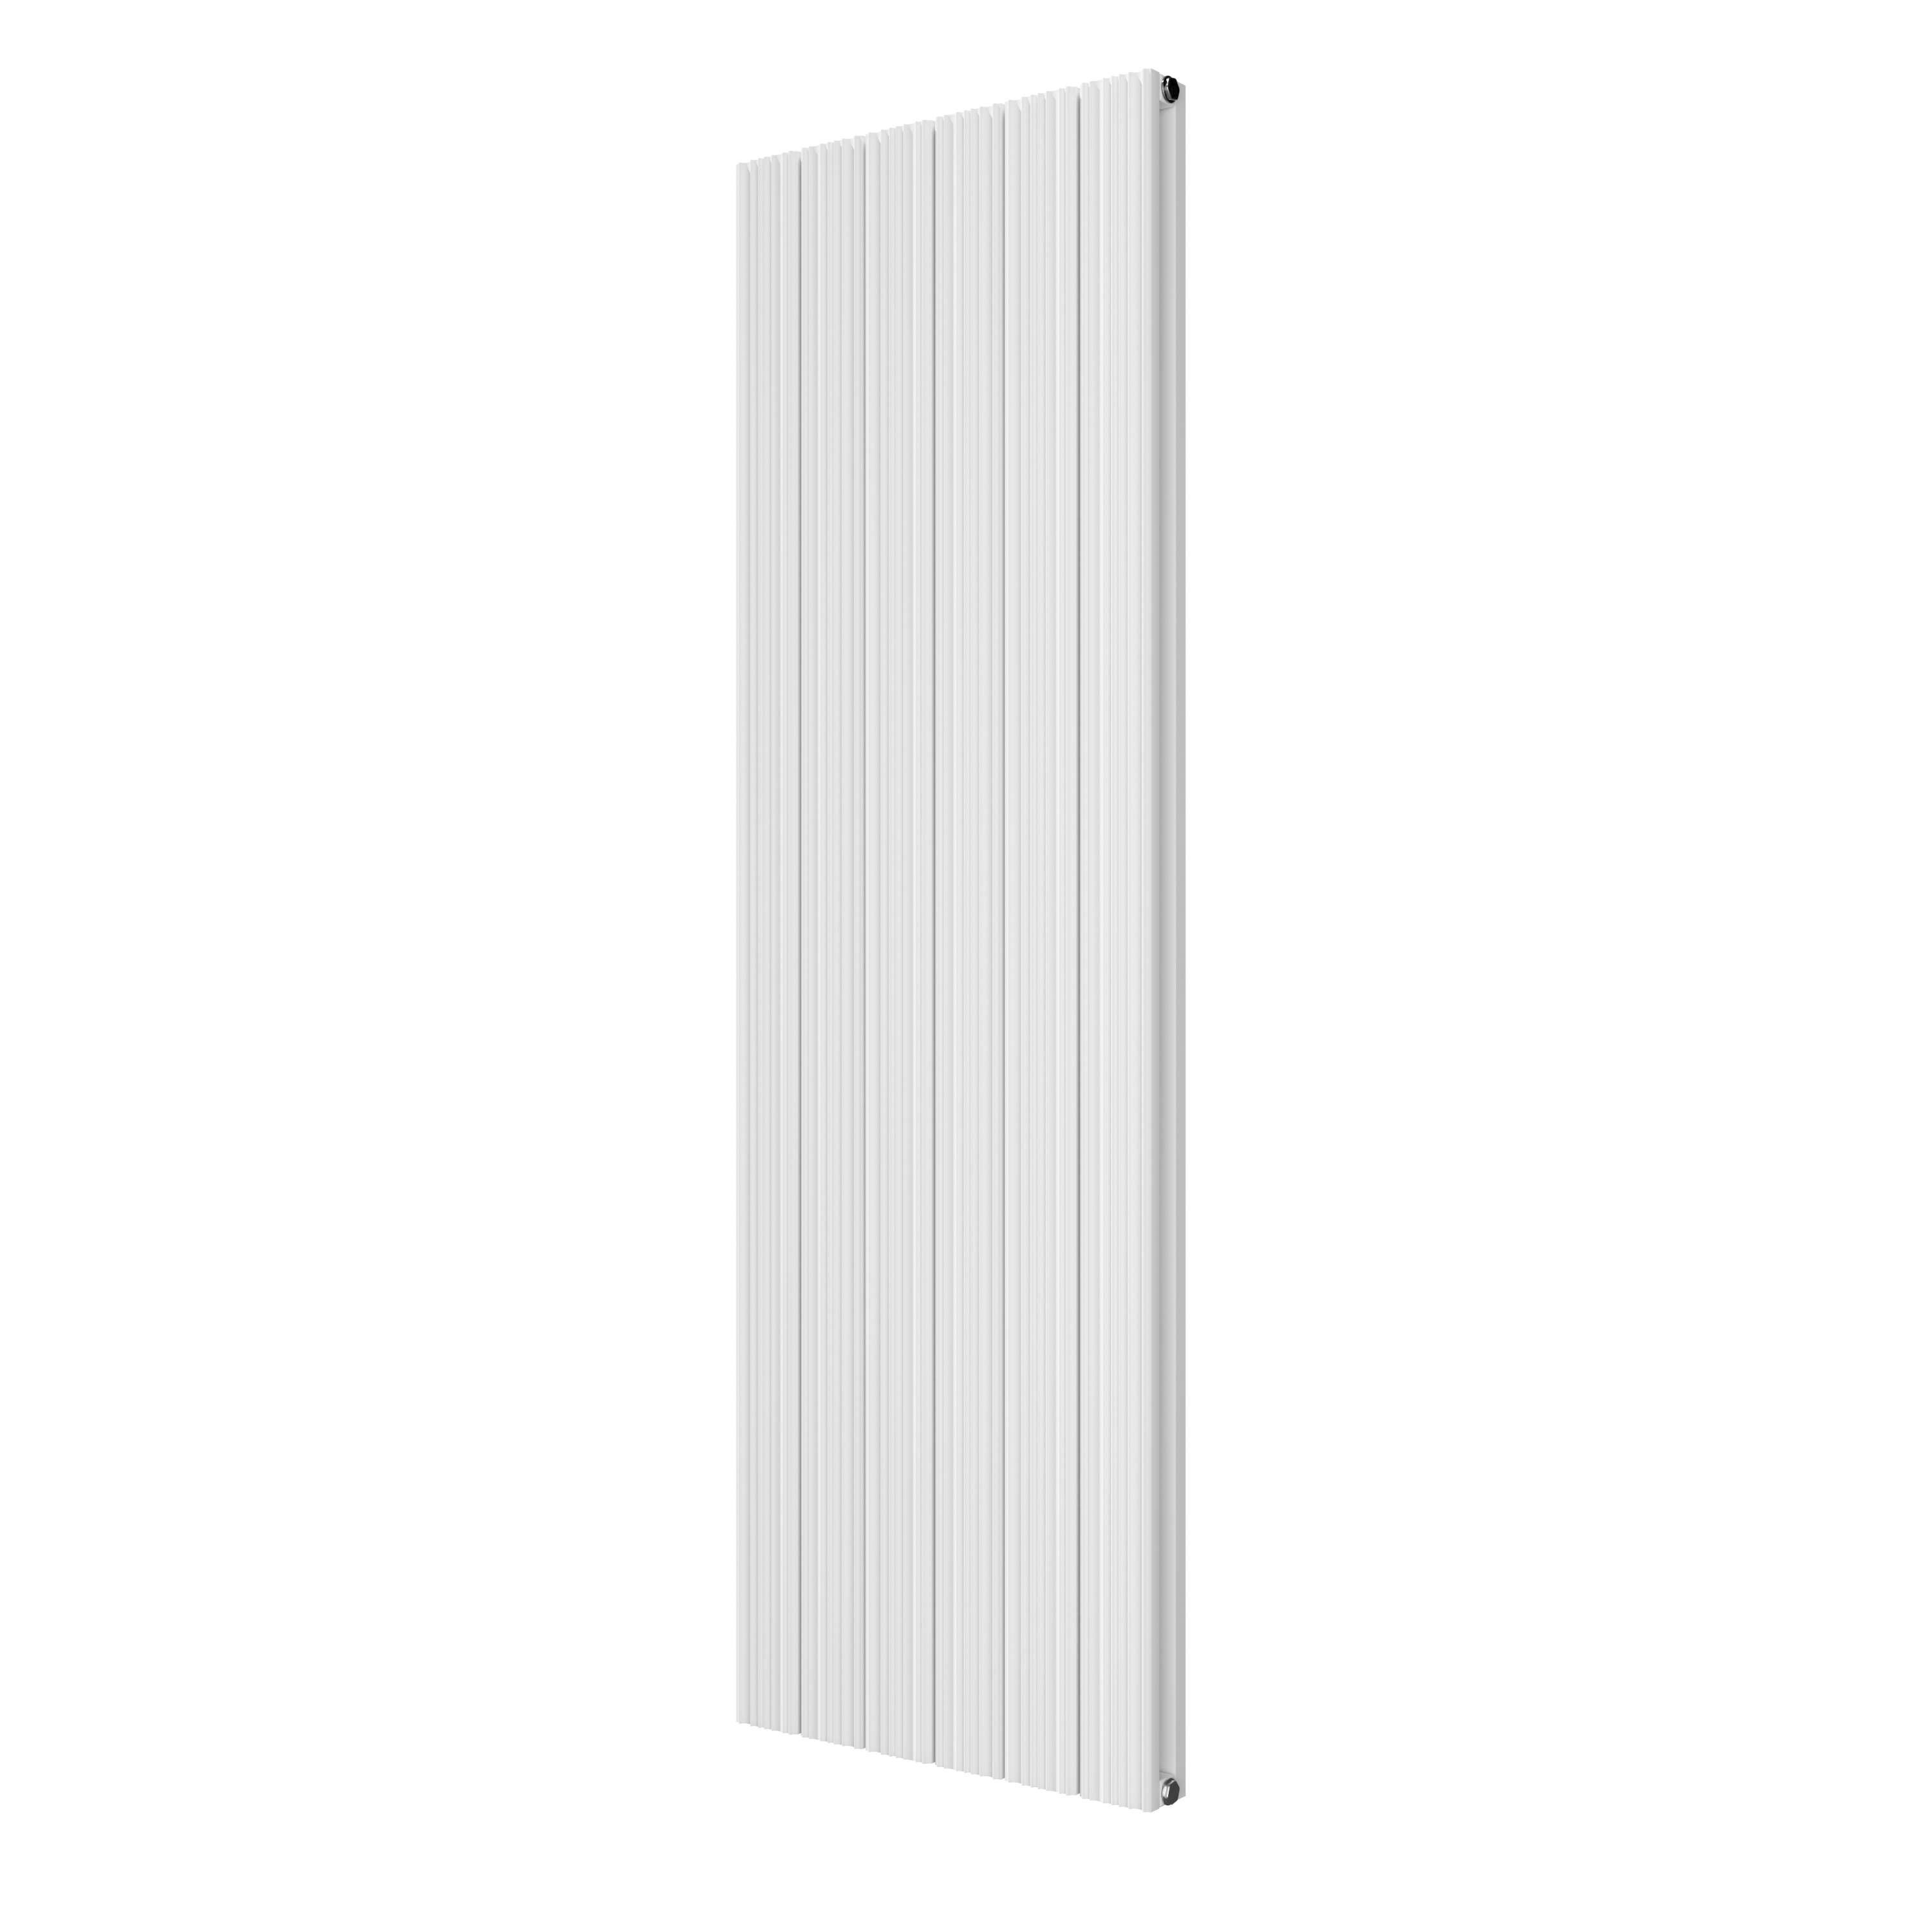 Vipera Mares dubbele handdoekradiator 56,5 x 180 cm centrale verwarming mat wit zij- en middenaansluiting 1,851W